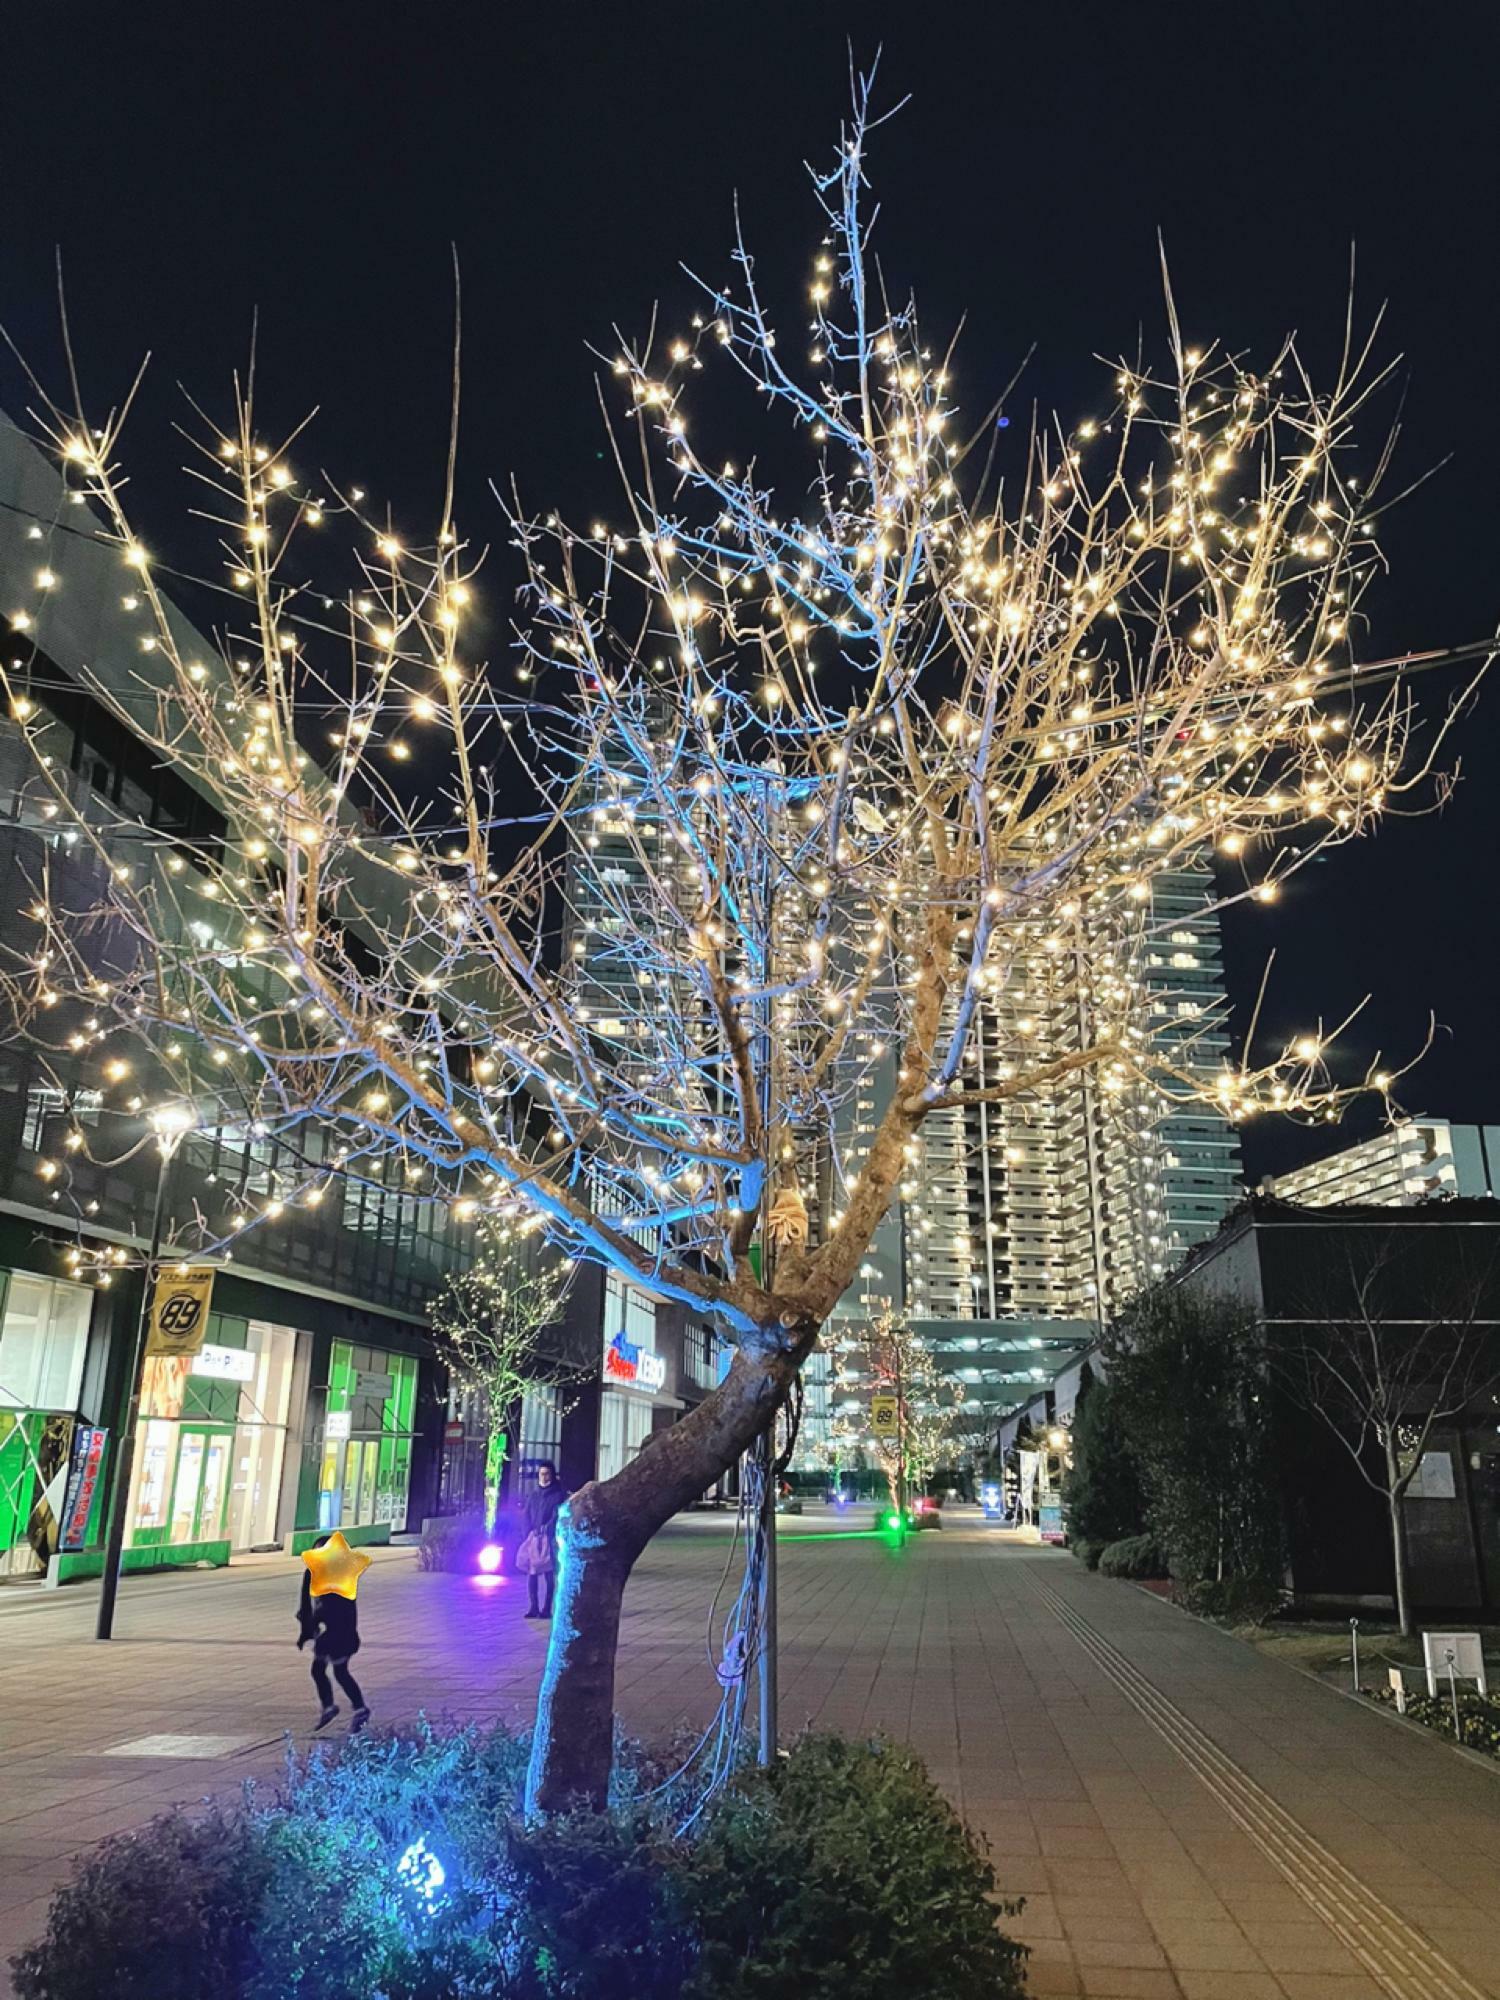 会場のkhb東日本放送へ向かう杜の広場公園の街路樹もイルミネーションで輝きます。